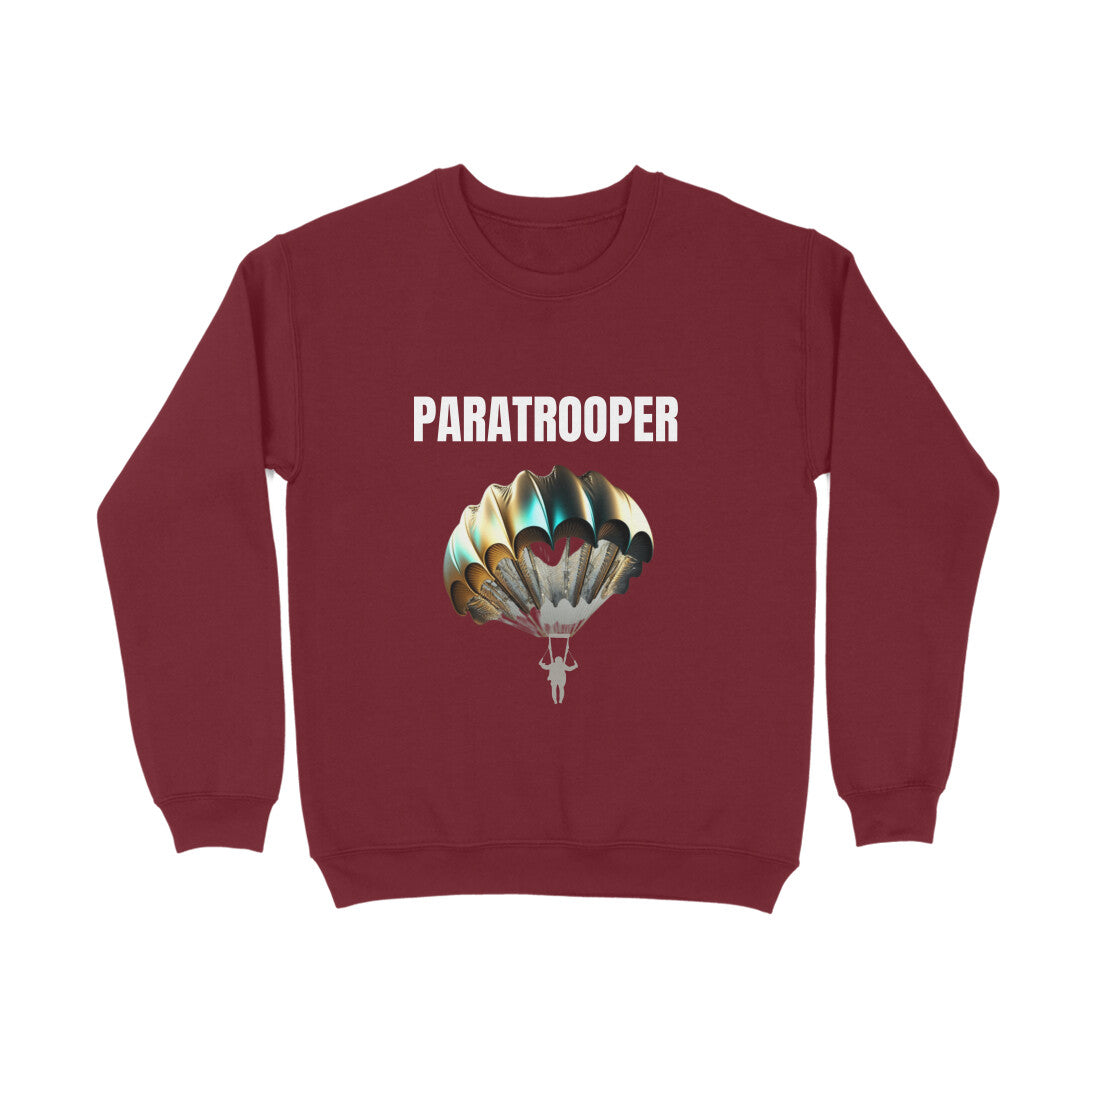 Paratrooper' Sweatshirt